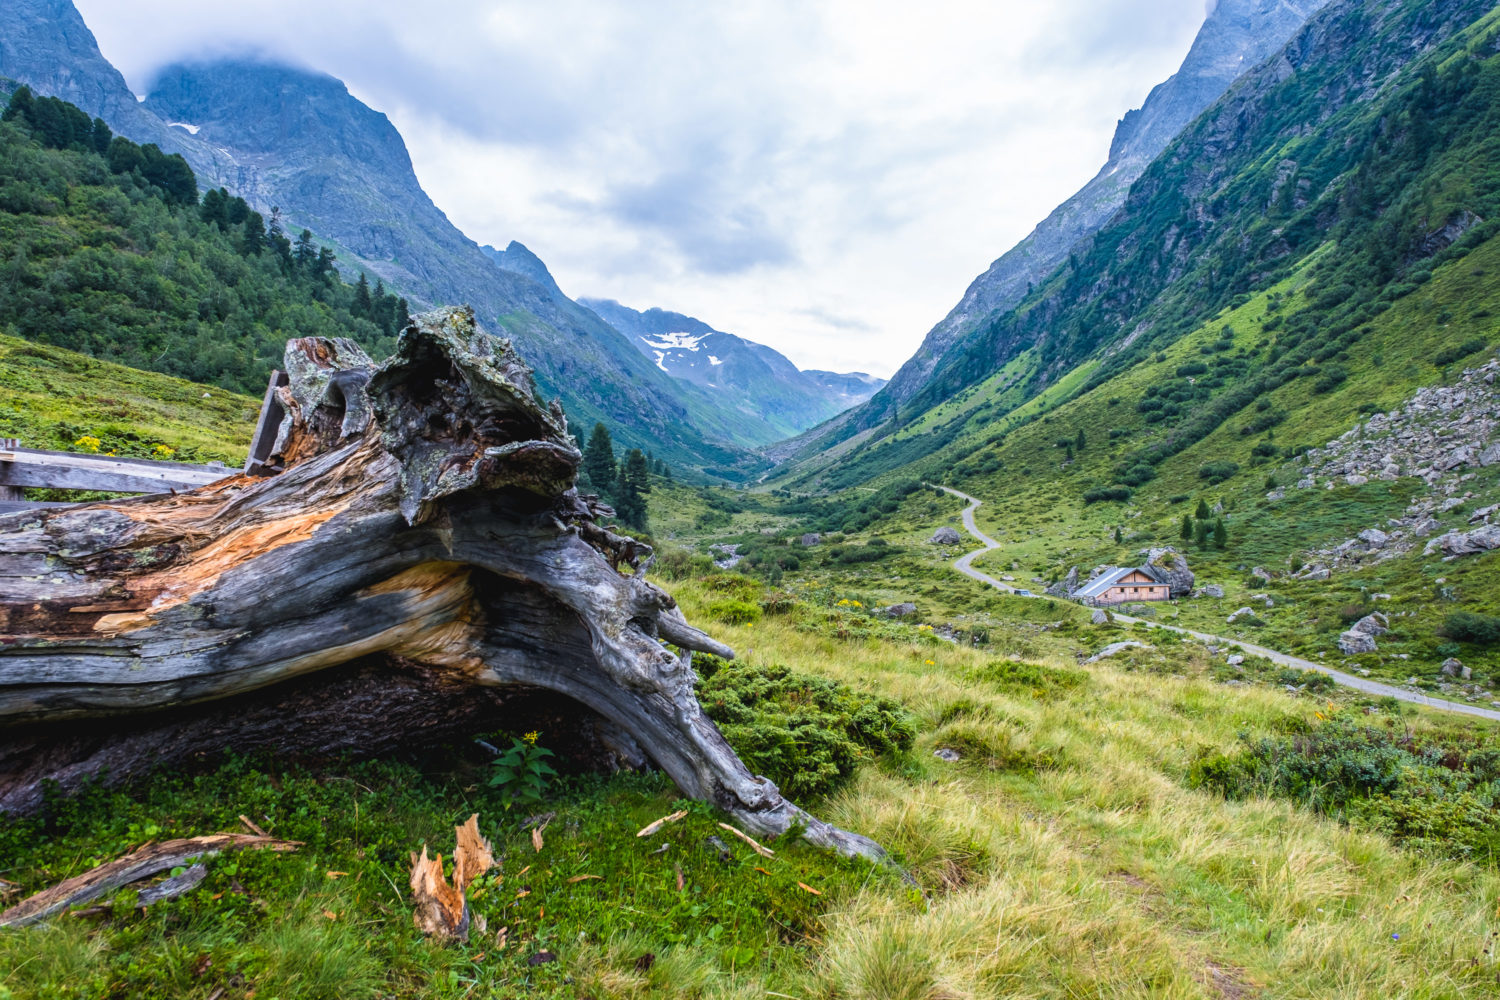 Entwurzelter Baum und Blick in ein Tal mit schroffen Berghängen